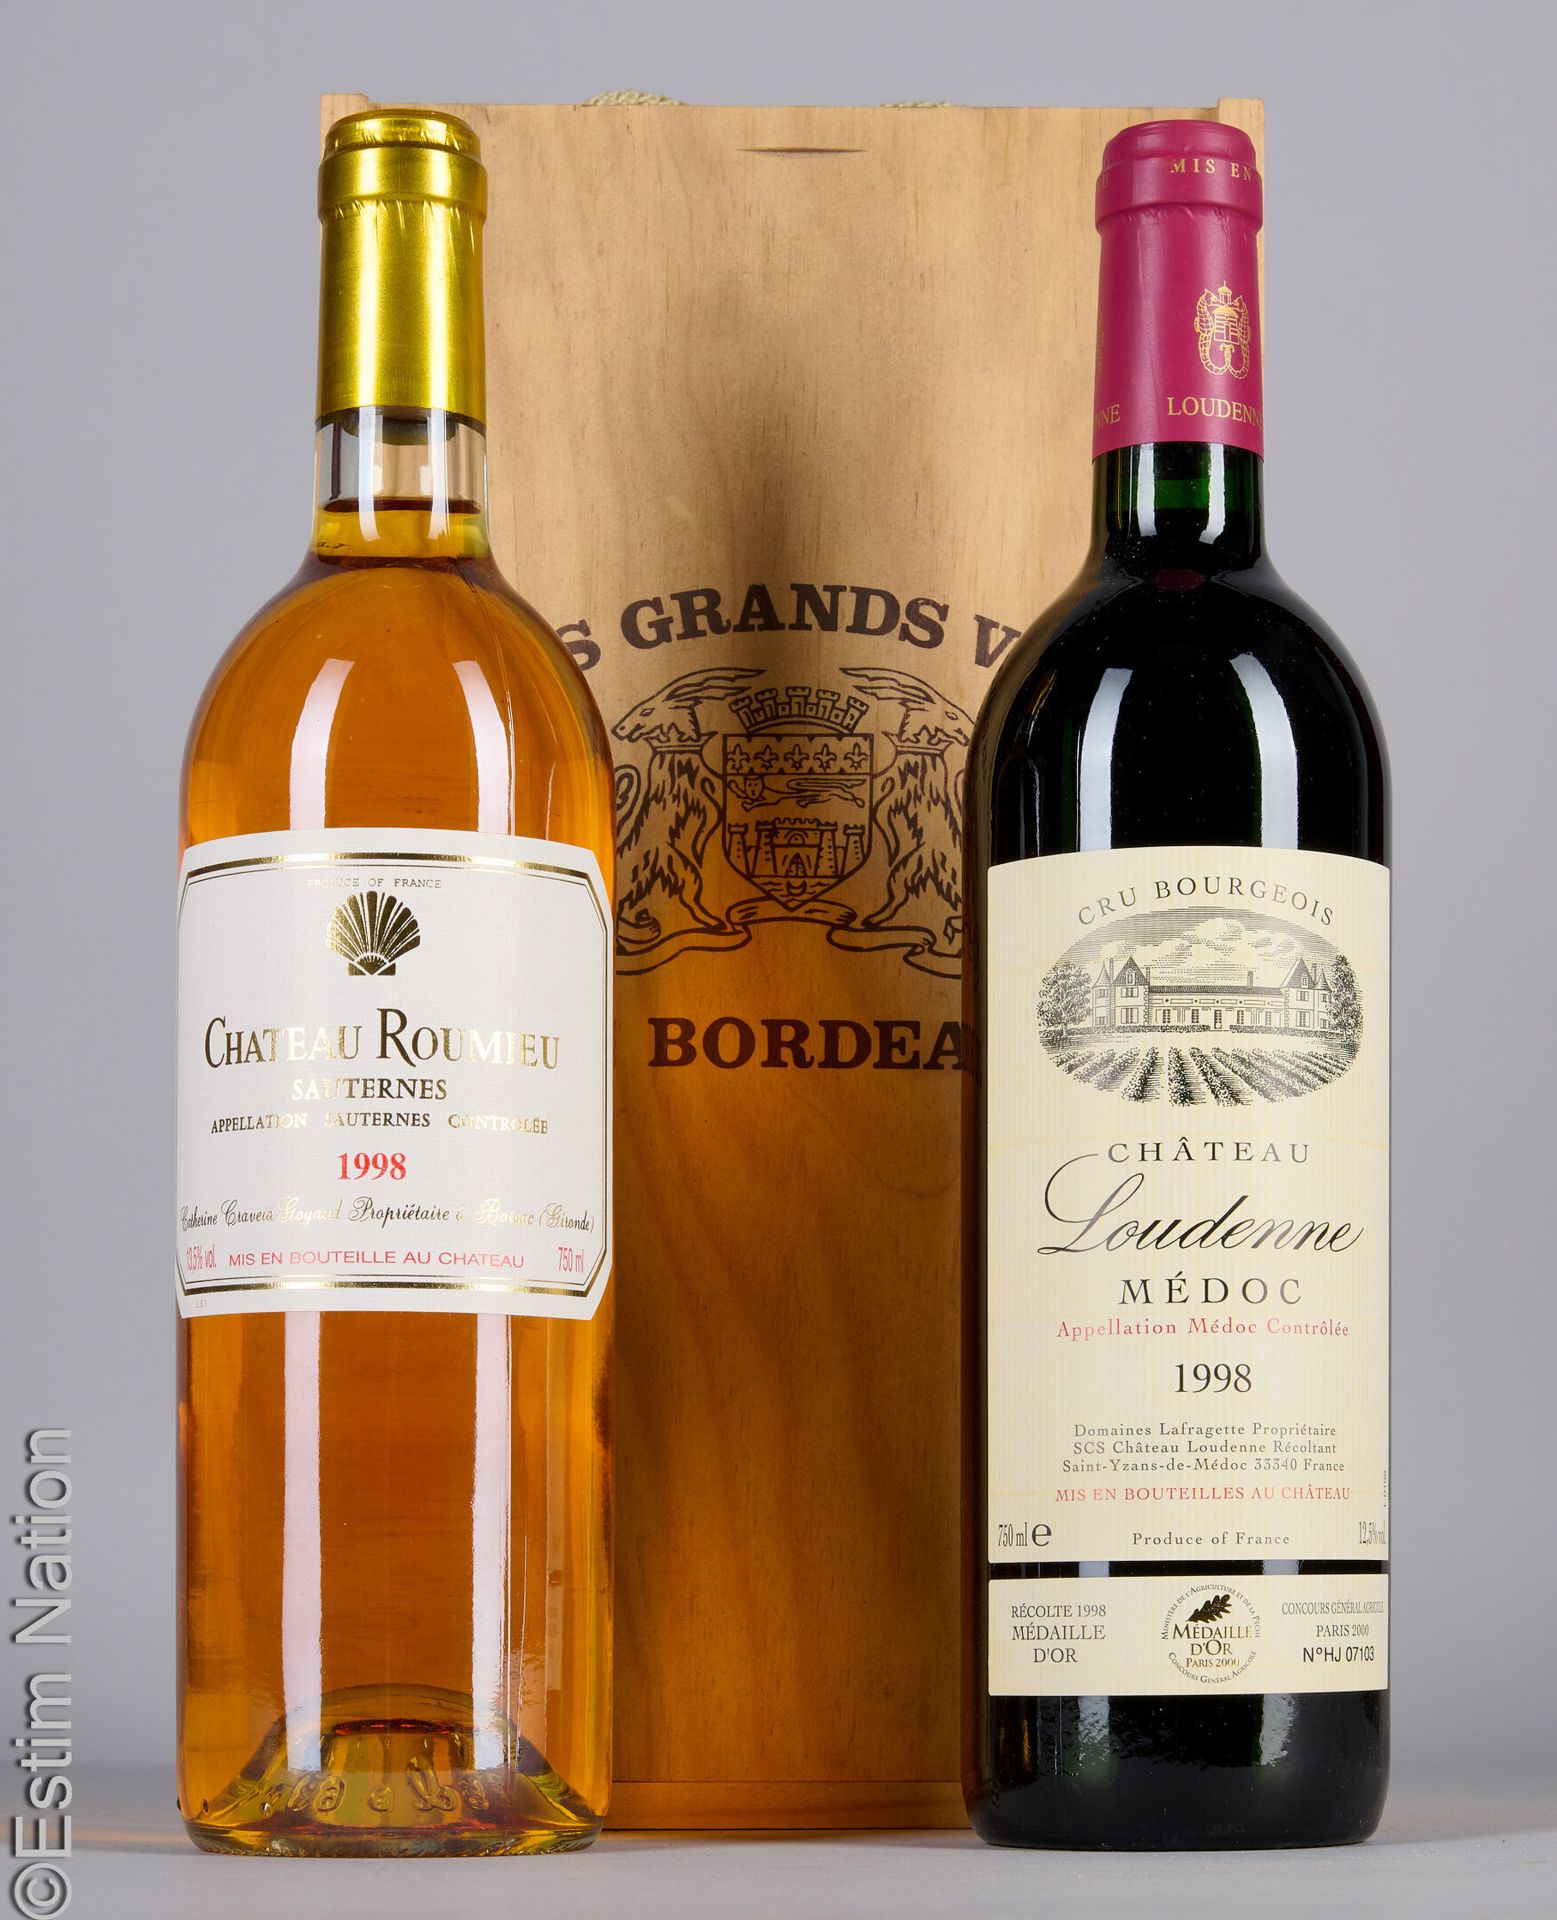 BORDEAUX 1 瓶 CHÂTEAU ROUMIEU 1998 Sauternes，1 瓶 LOUDENNE 1998 Médoc
(CB)